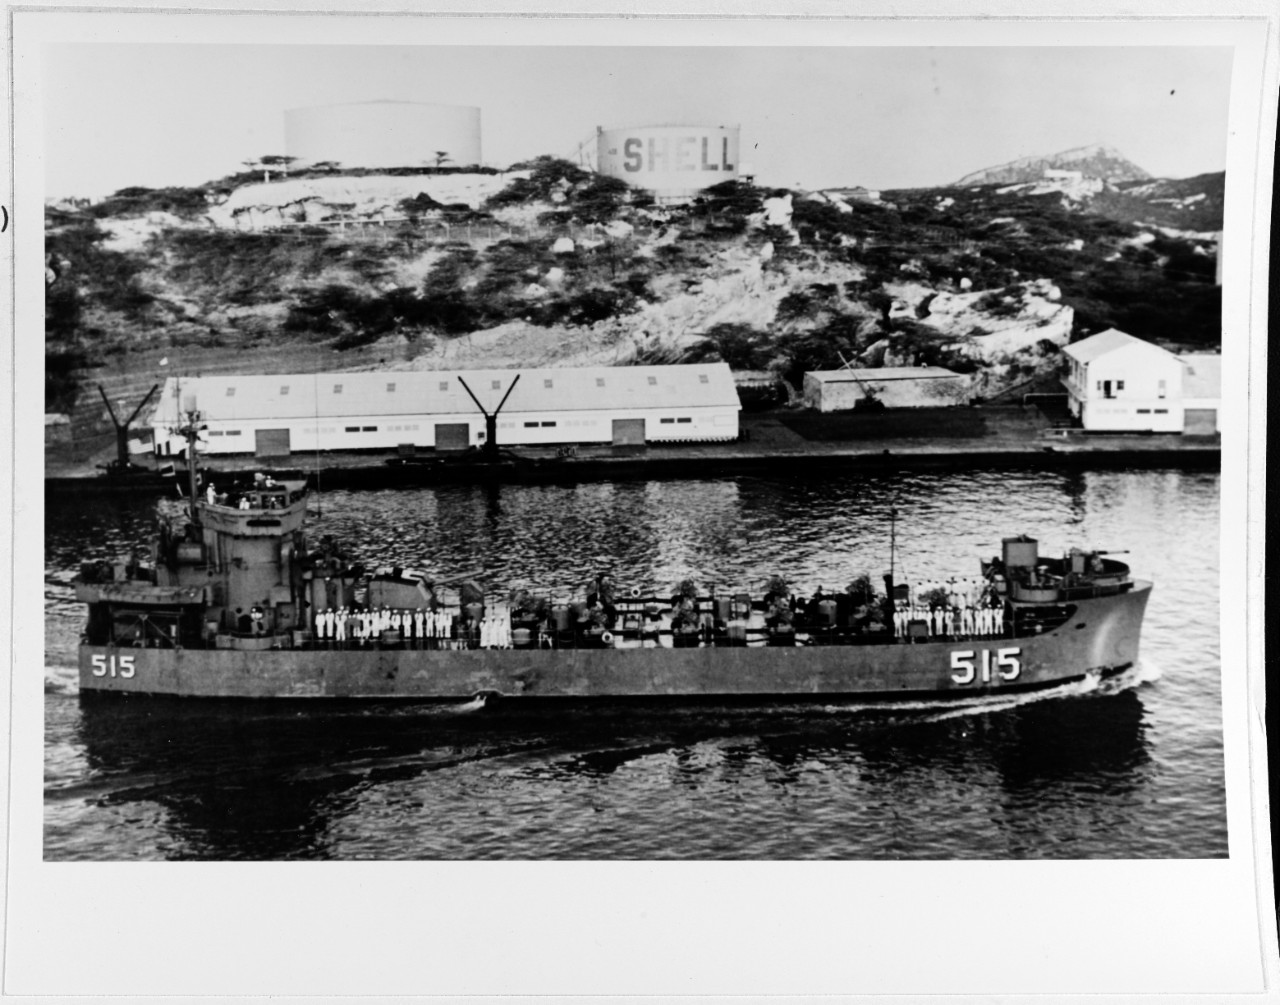 USS LSMR-515 (later: OWYHEE RIVER) 